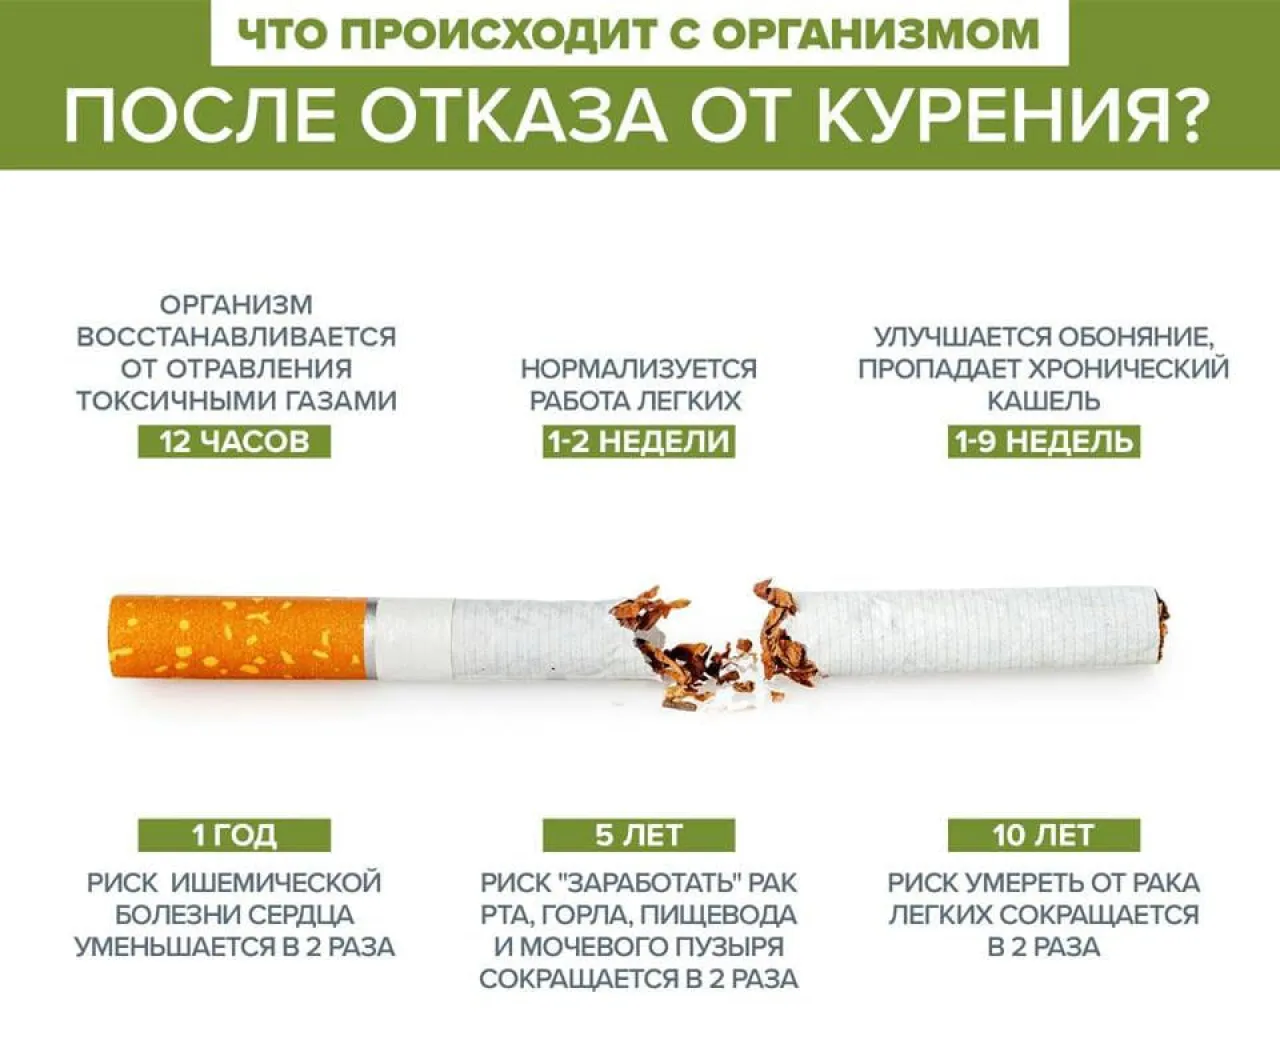 Этапы очищения организма после отказа от сигарет